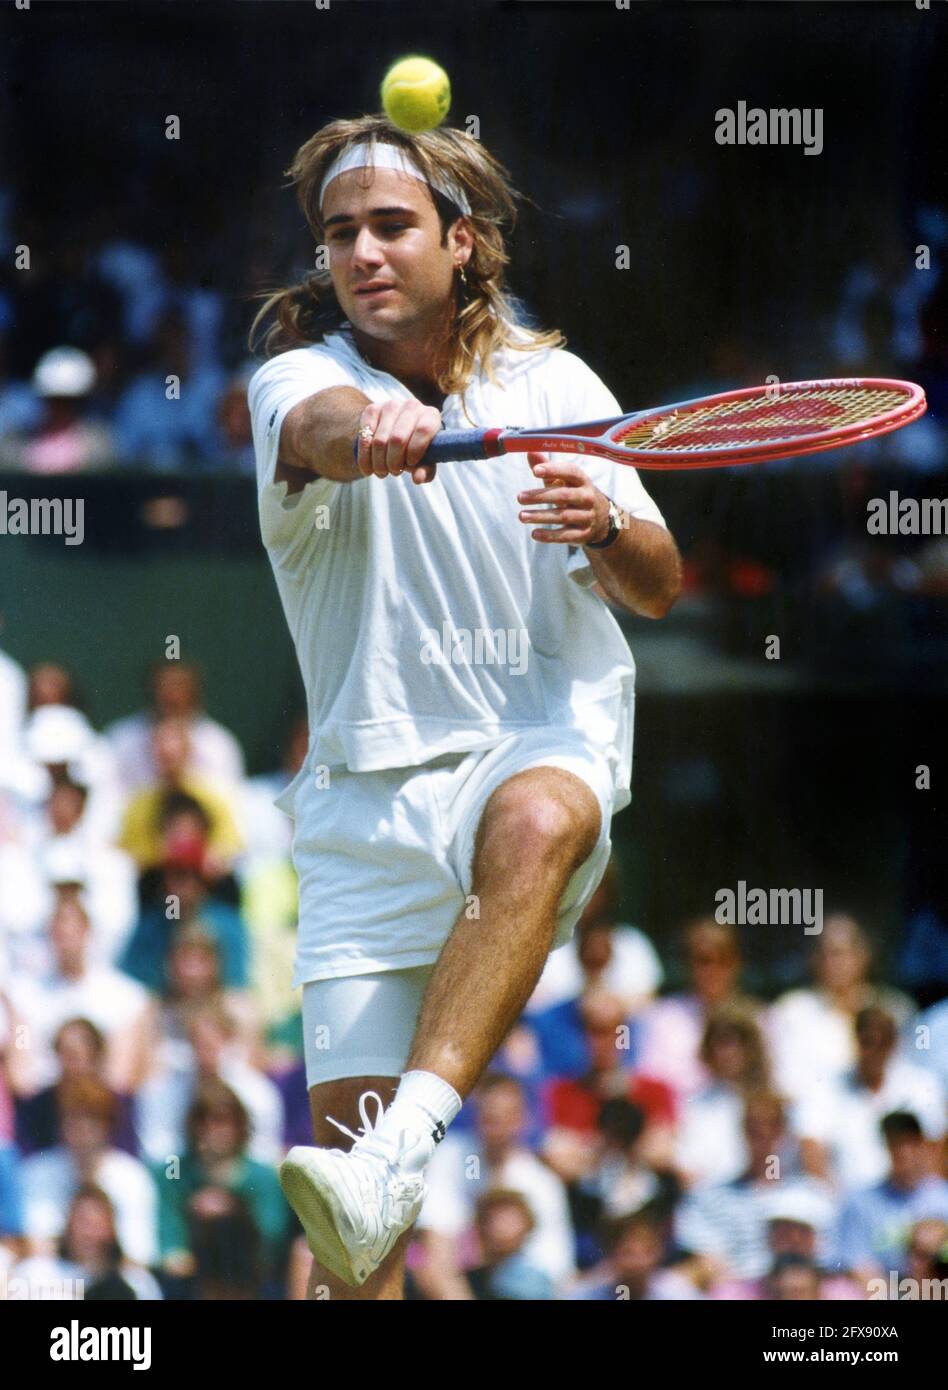 Tournoi de tennis de Wimbledon 1991 Andre Agassi jouant sur le court central. Andre Agassi Wimbledon années 1990 1991 tennis action hommes Banque D'Images